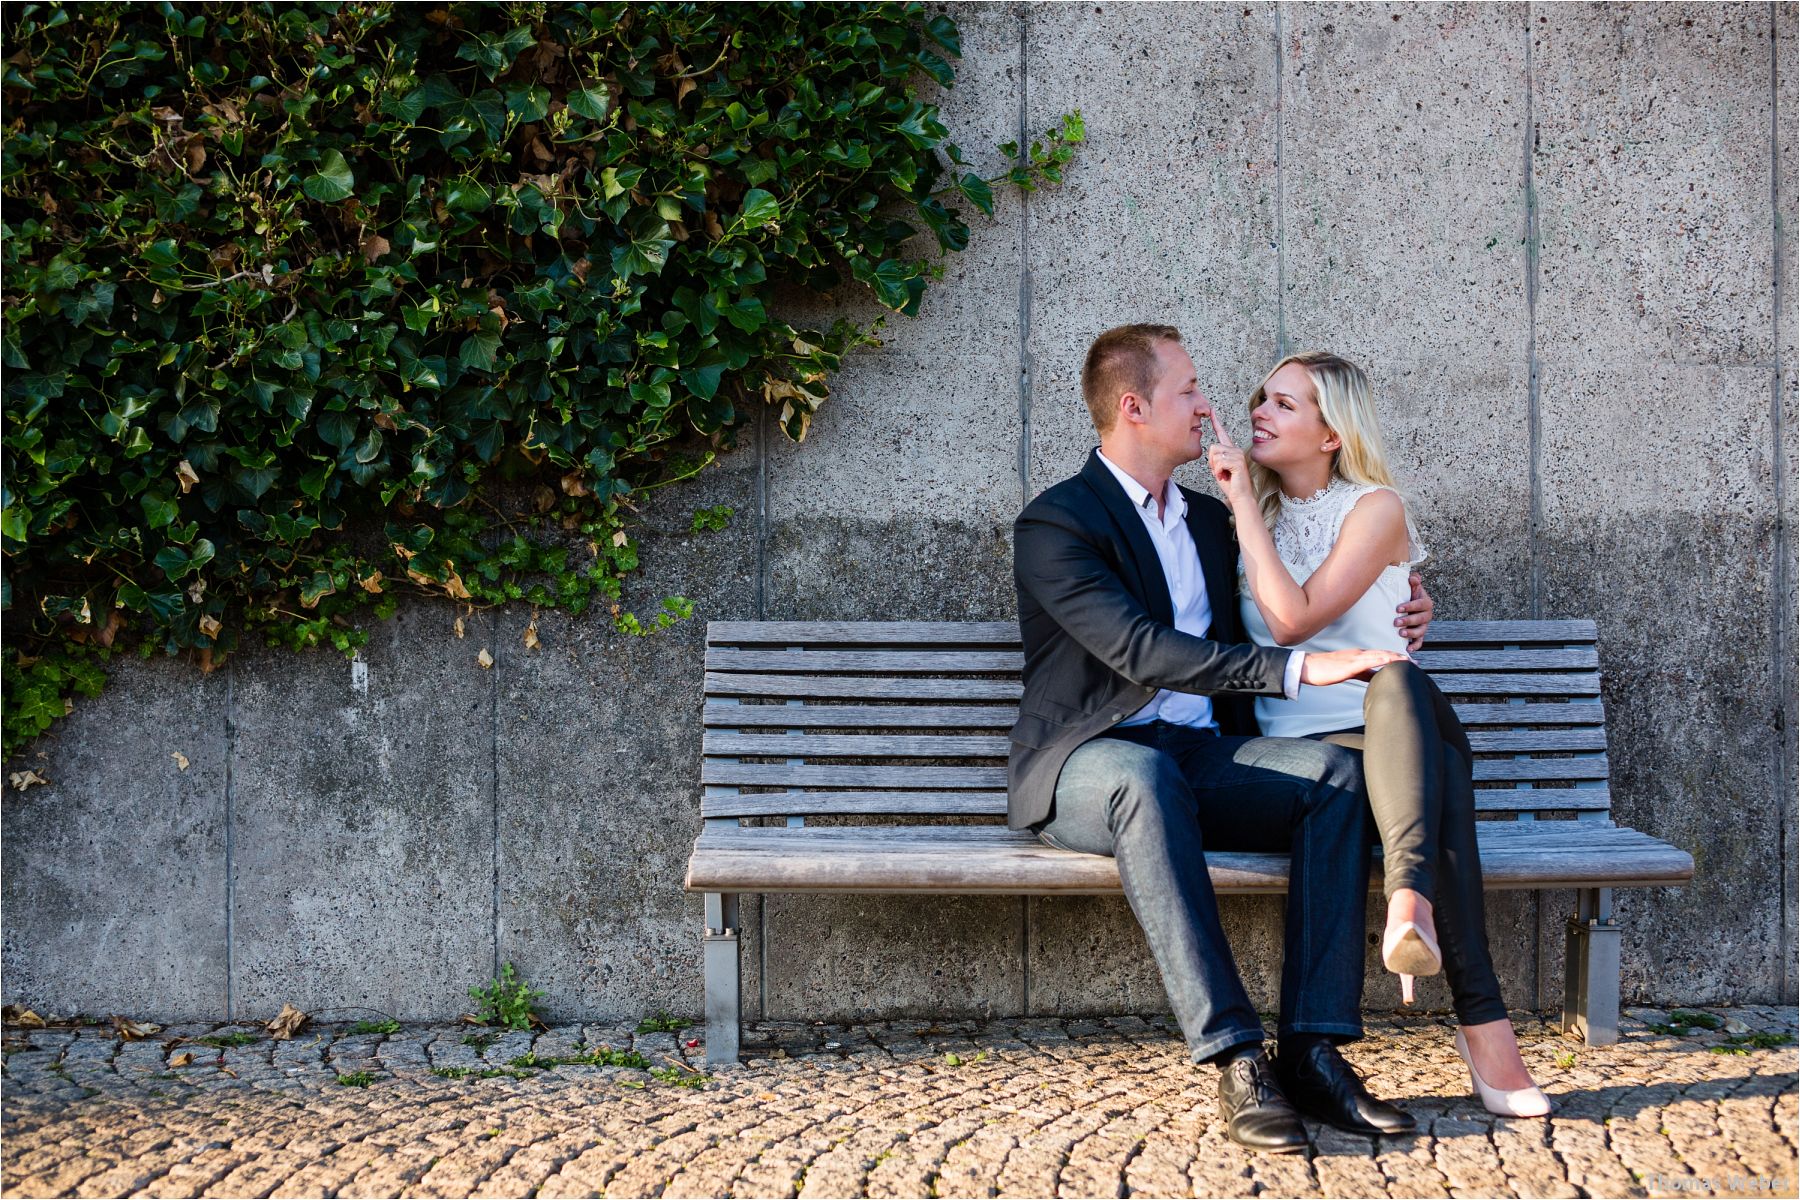 Fotograf Thomas Weber aus Oldenburg: Paarfotos eines verliebten Hochzeitspaares